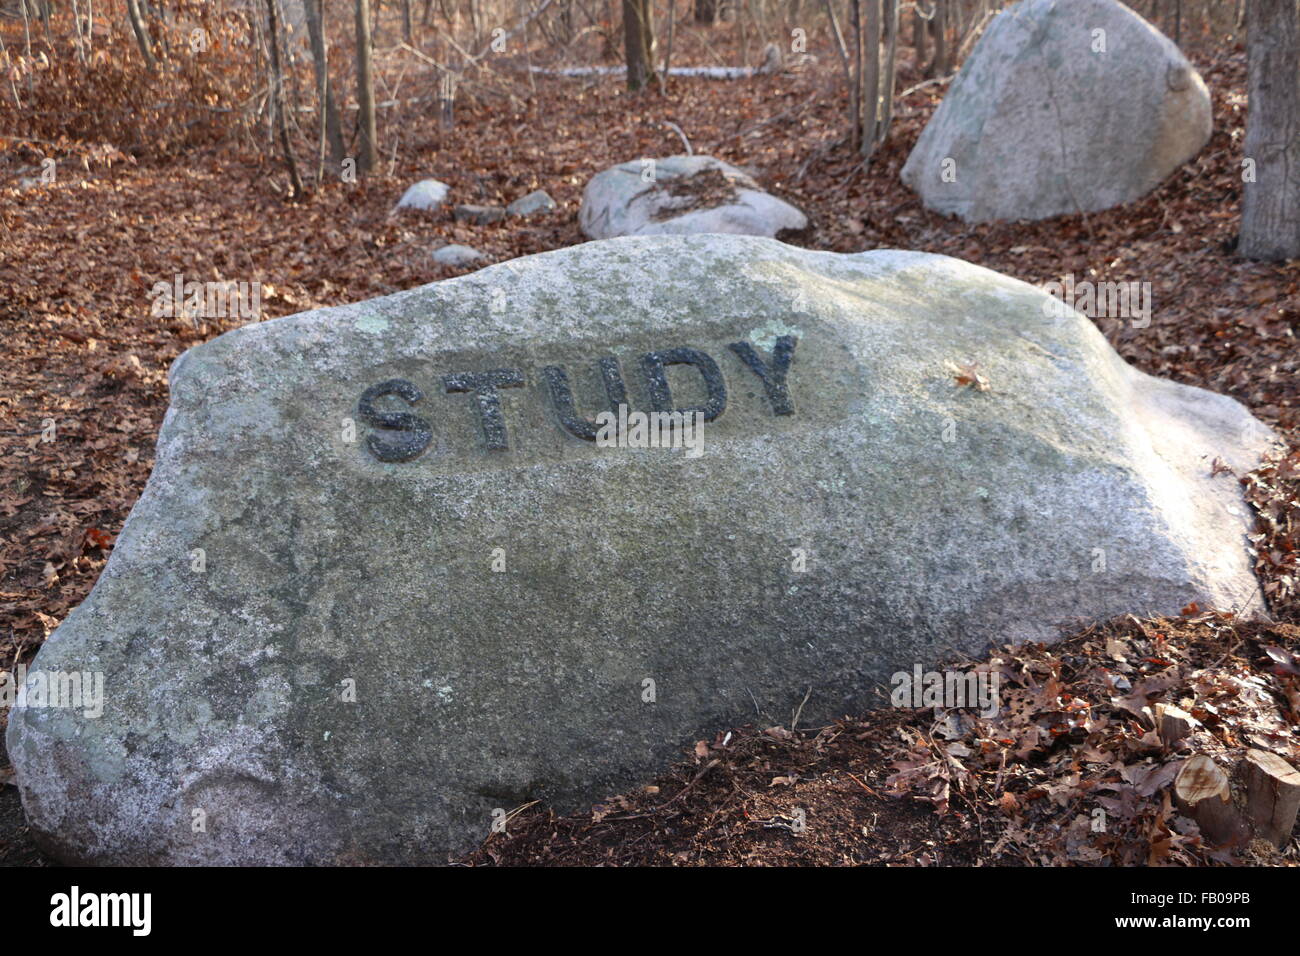 Foto lungo i sentieri escursionistici di Dogtown Massachusetts. Scolpiti nella pietra studio del messaggio può essere trovato nel profondo del bosco. Foto Stock